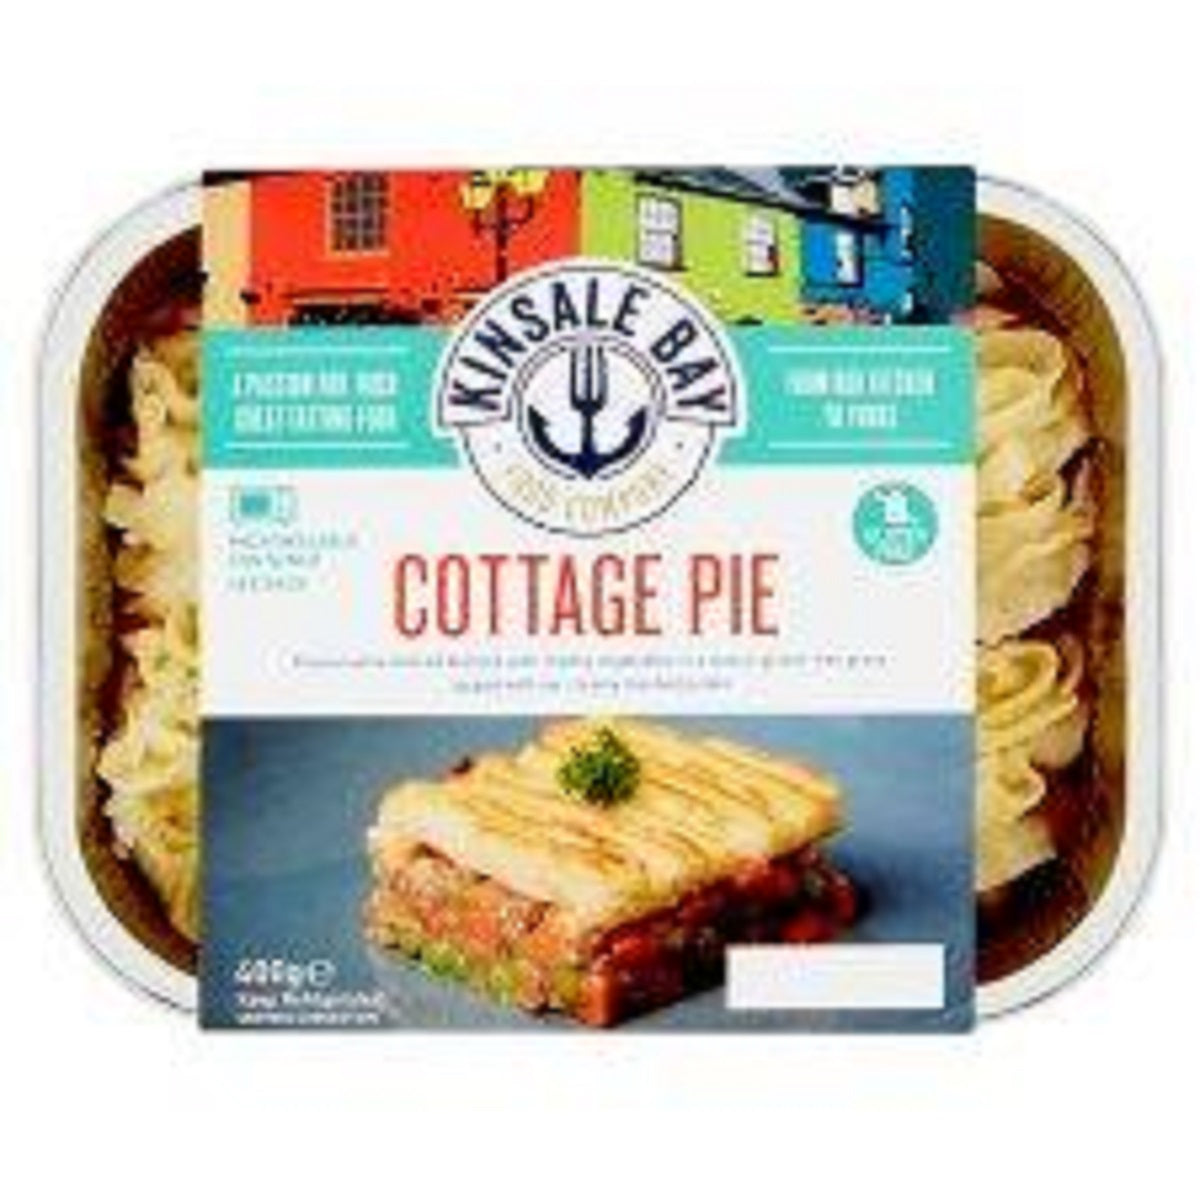 Kinsale Bay Cottage Pie 400g